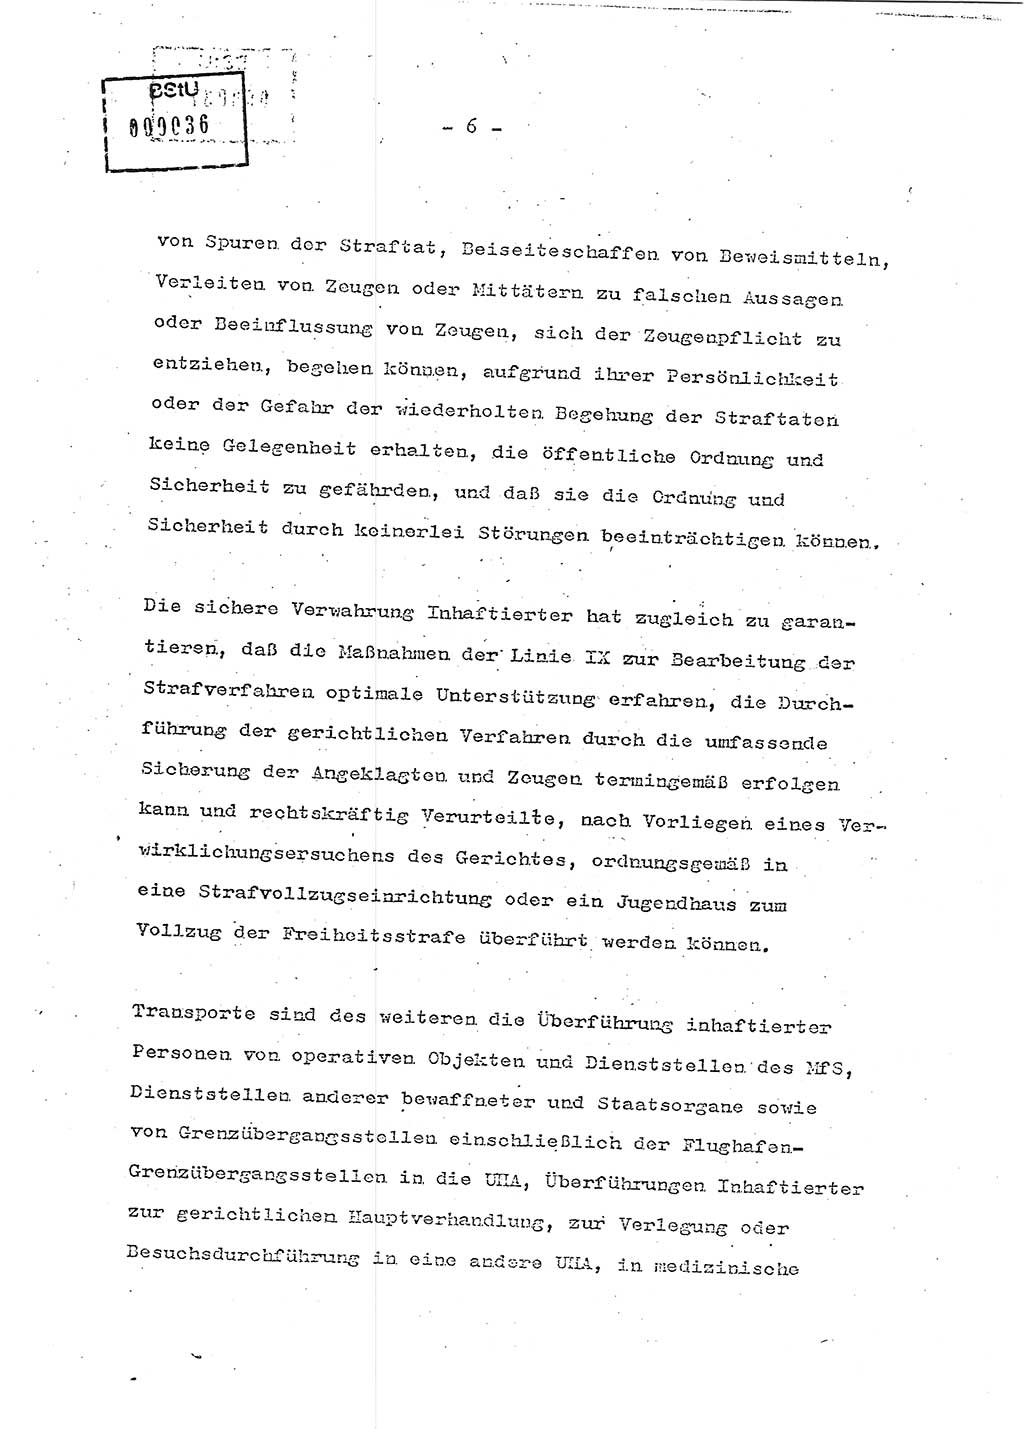 Schulungsmaterial Exemplar-Nr.: 7, Ministerium für Staatssicherheit [Deutsche Demokratische Republik (DDR)], Abteilung (Abt.) ⅩⅣ, Berlin 1986, Seite 6 (Sch.-Mat. Expl. 7 MfS DDR Abt. ⅩⅣ /86 1986, S. 6)